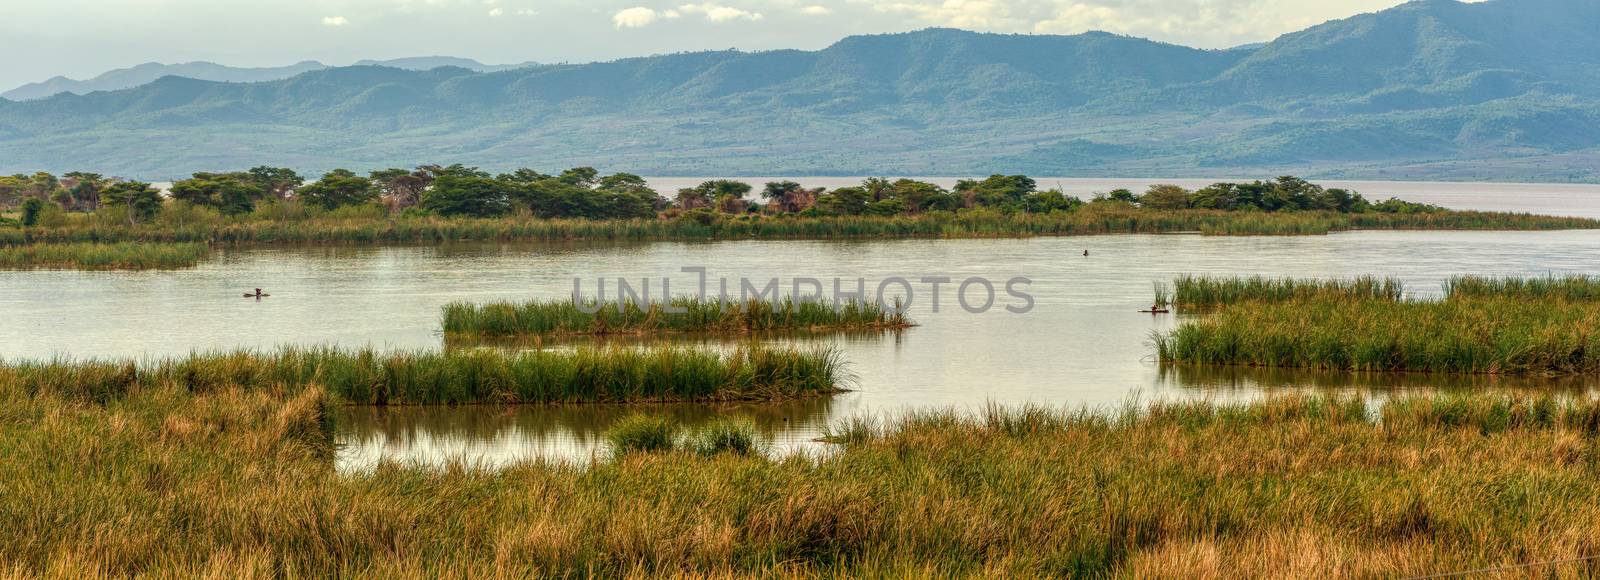 Lake Chamo landscape, Ethiopia Africa by artush